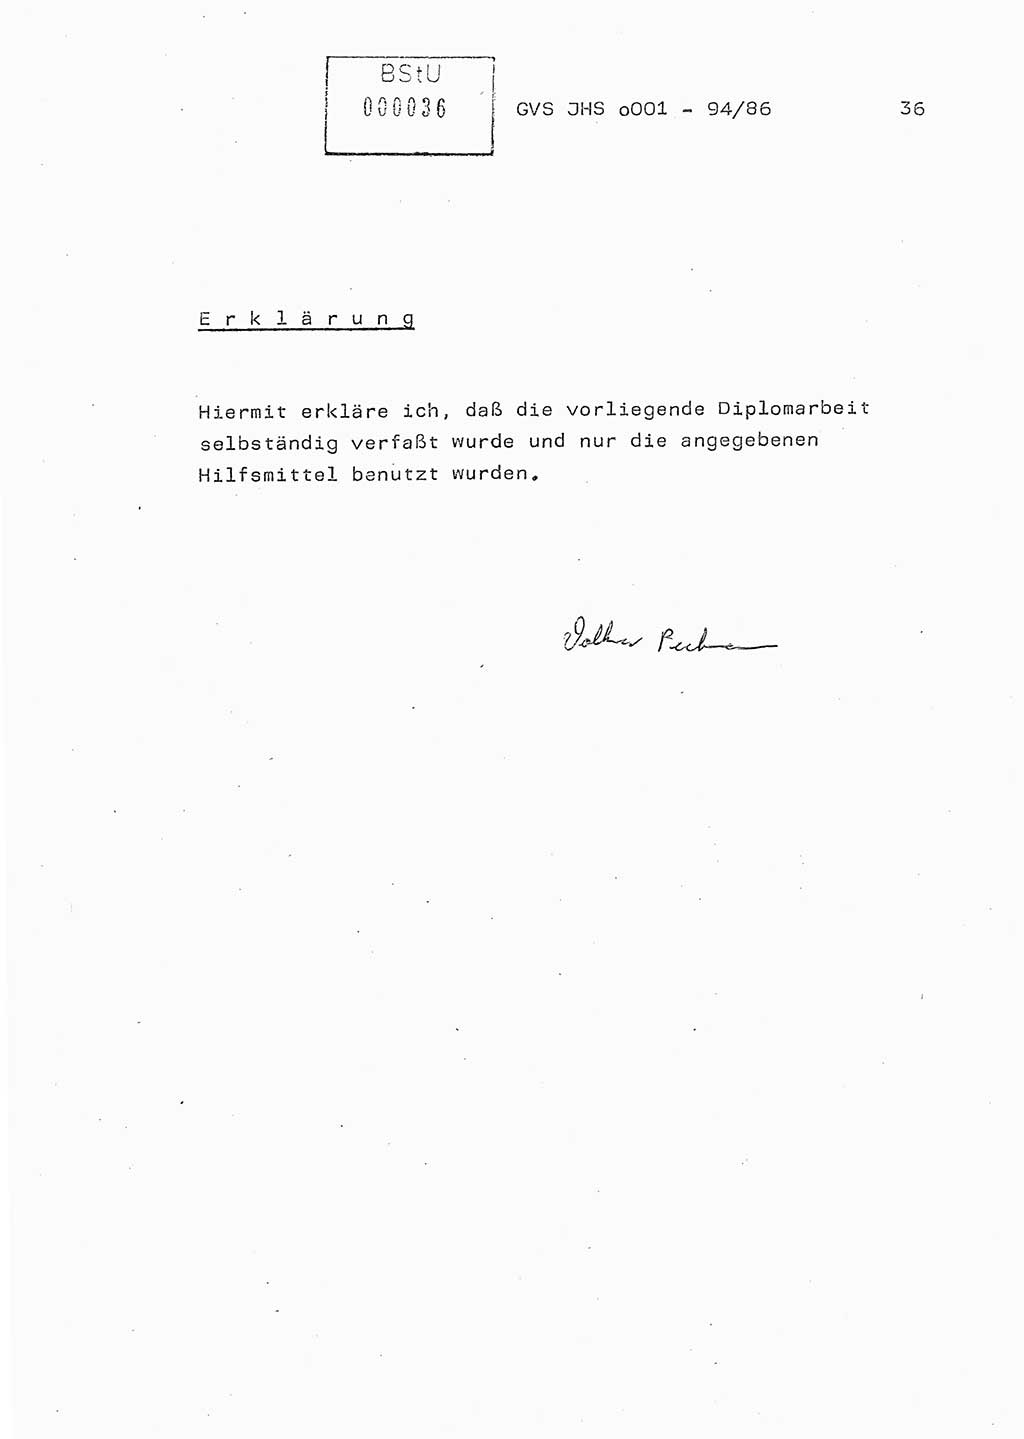 Diplomarbeit Oberleutnant Volkmar Pechmann (HA ⅩⅩ/5), Ministerium für Staatssicherheit (MfS) [Deutsche Demokratische Republik (DDR)], Juristische Hochschule (JHS), Geheime Verschlußsache (GVS) o001-94/86, Potsdam 1986, Blatt 36 (Dipl.-Arb. MfS DDR JHS GVS o001-94/86 1986, Bl. 36)